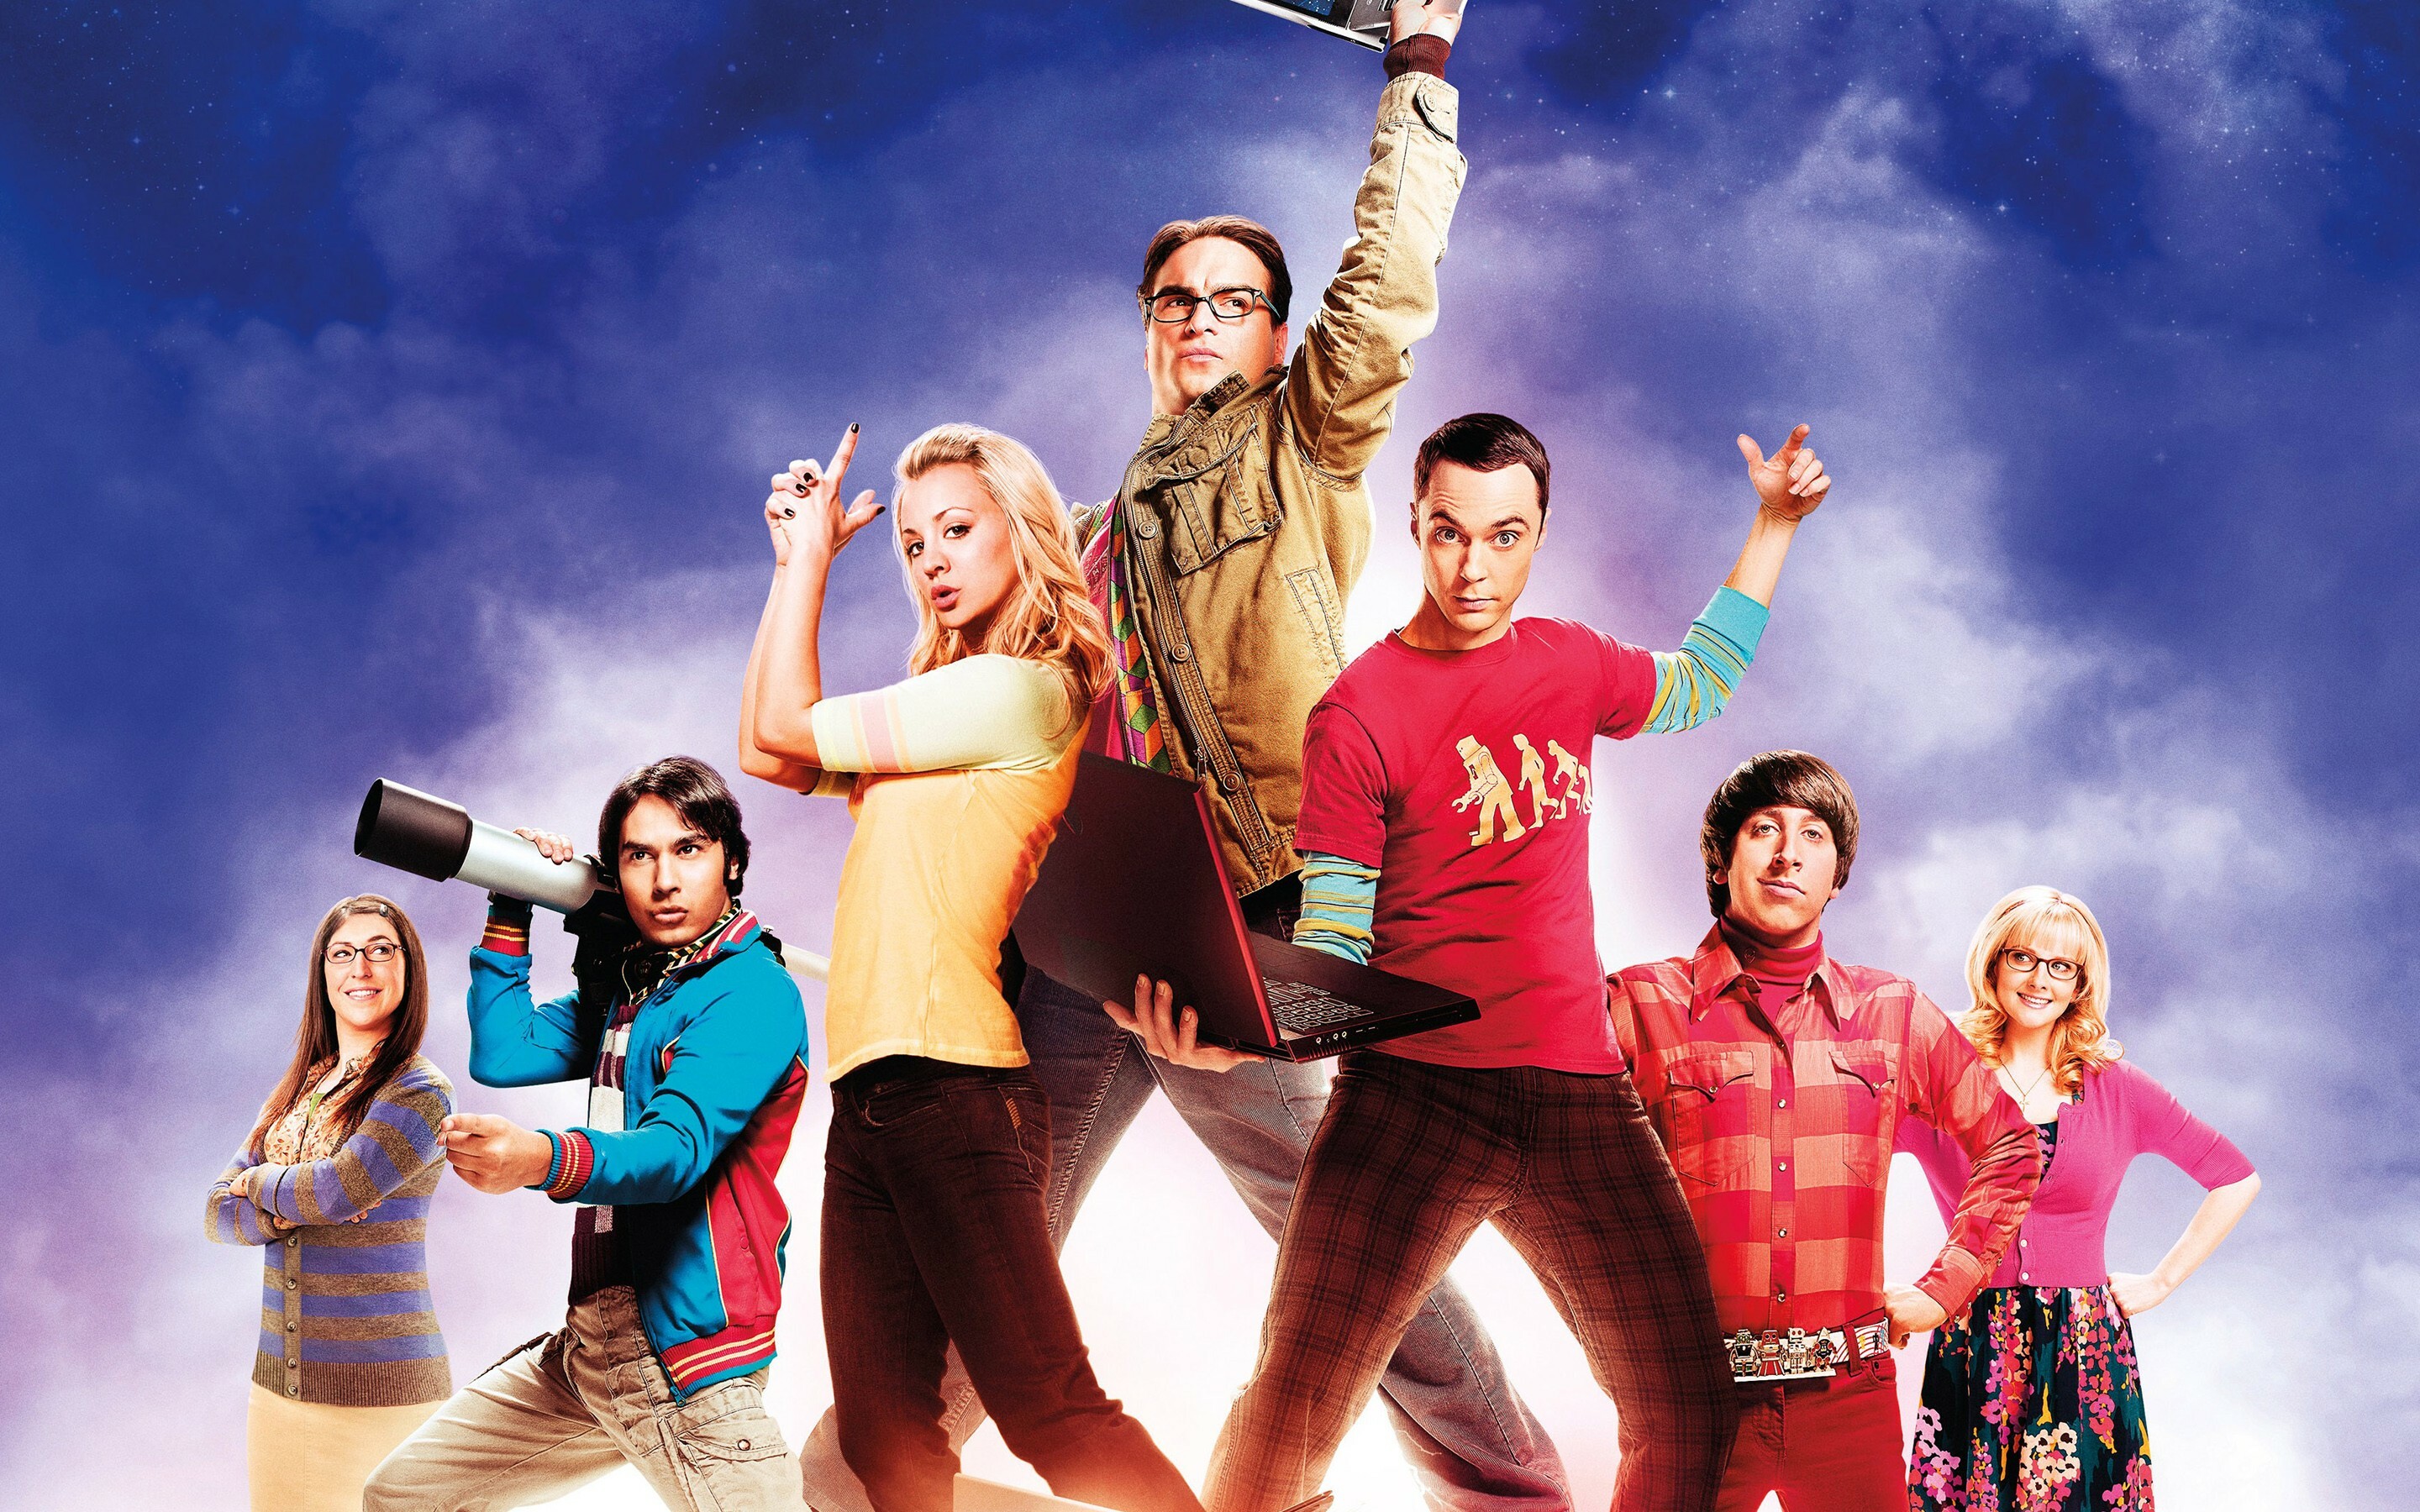 The Big Bang Theory: The Big Bang Theory 4, CBS television series. 2880x1800 HD Wallpaper.